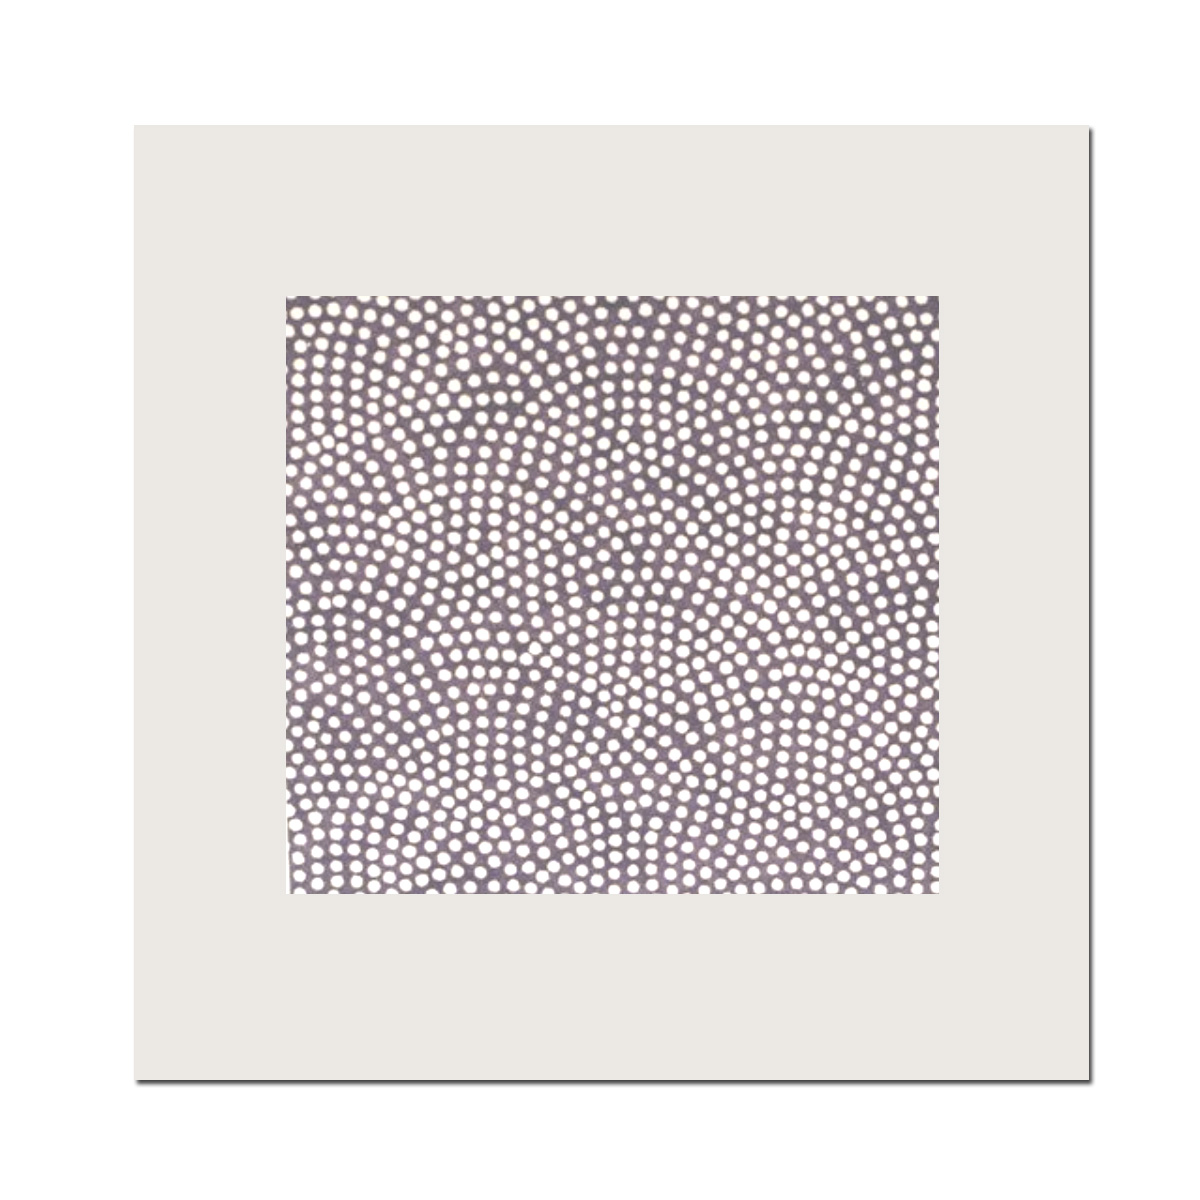 Chiyogami-Doppelkarte quadratisch, Punkte weiß auf graubraun